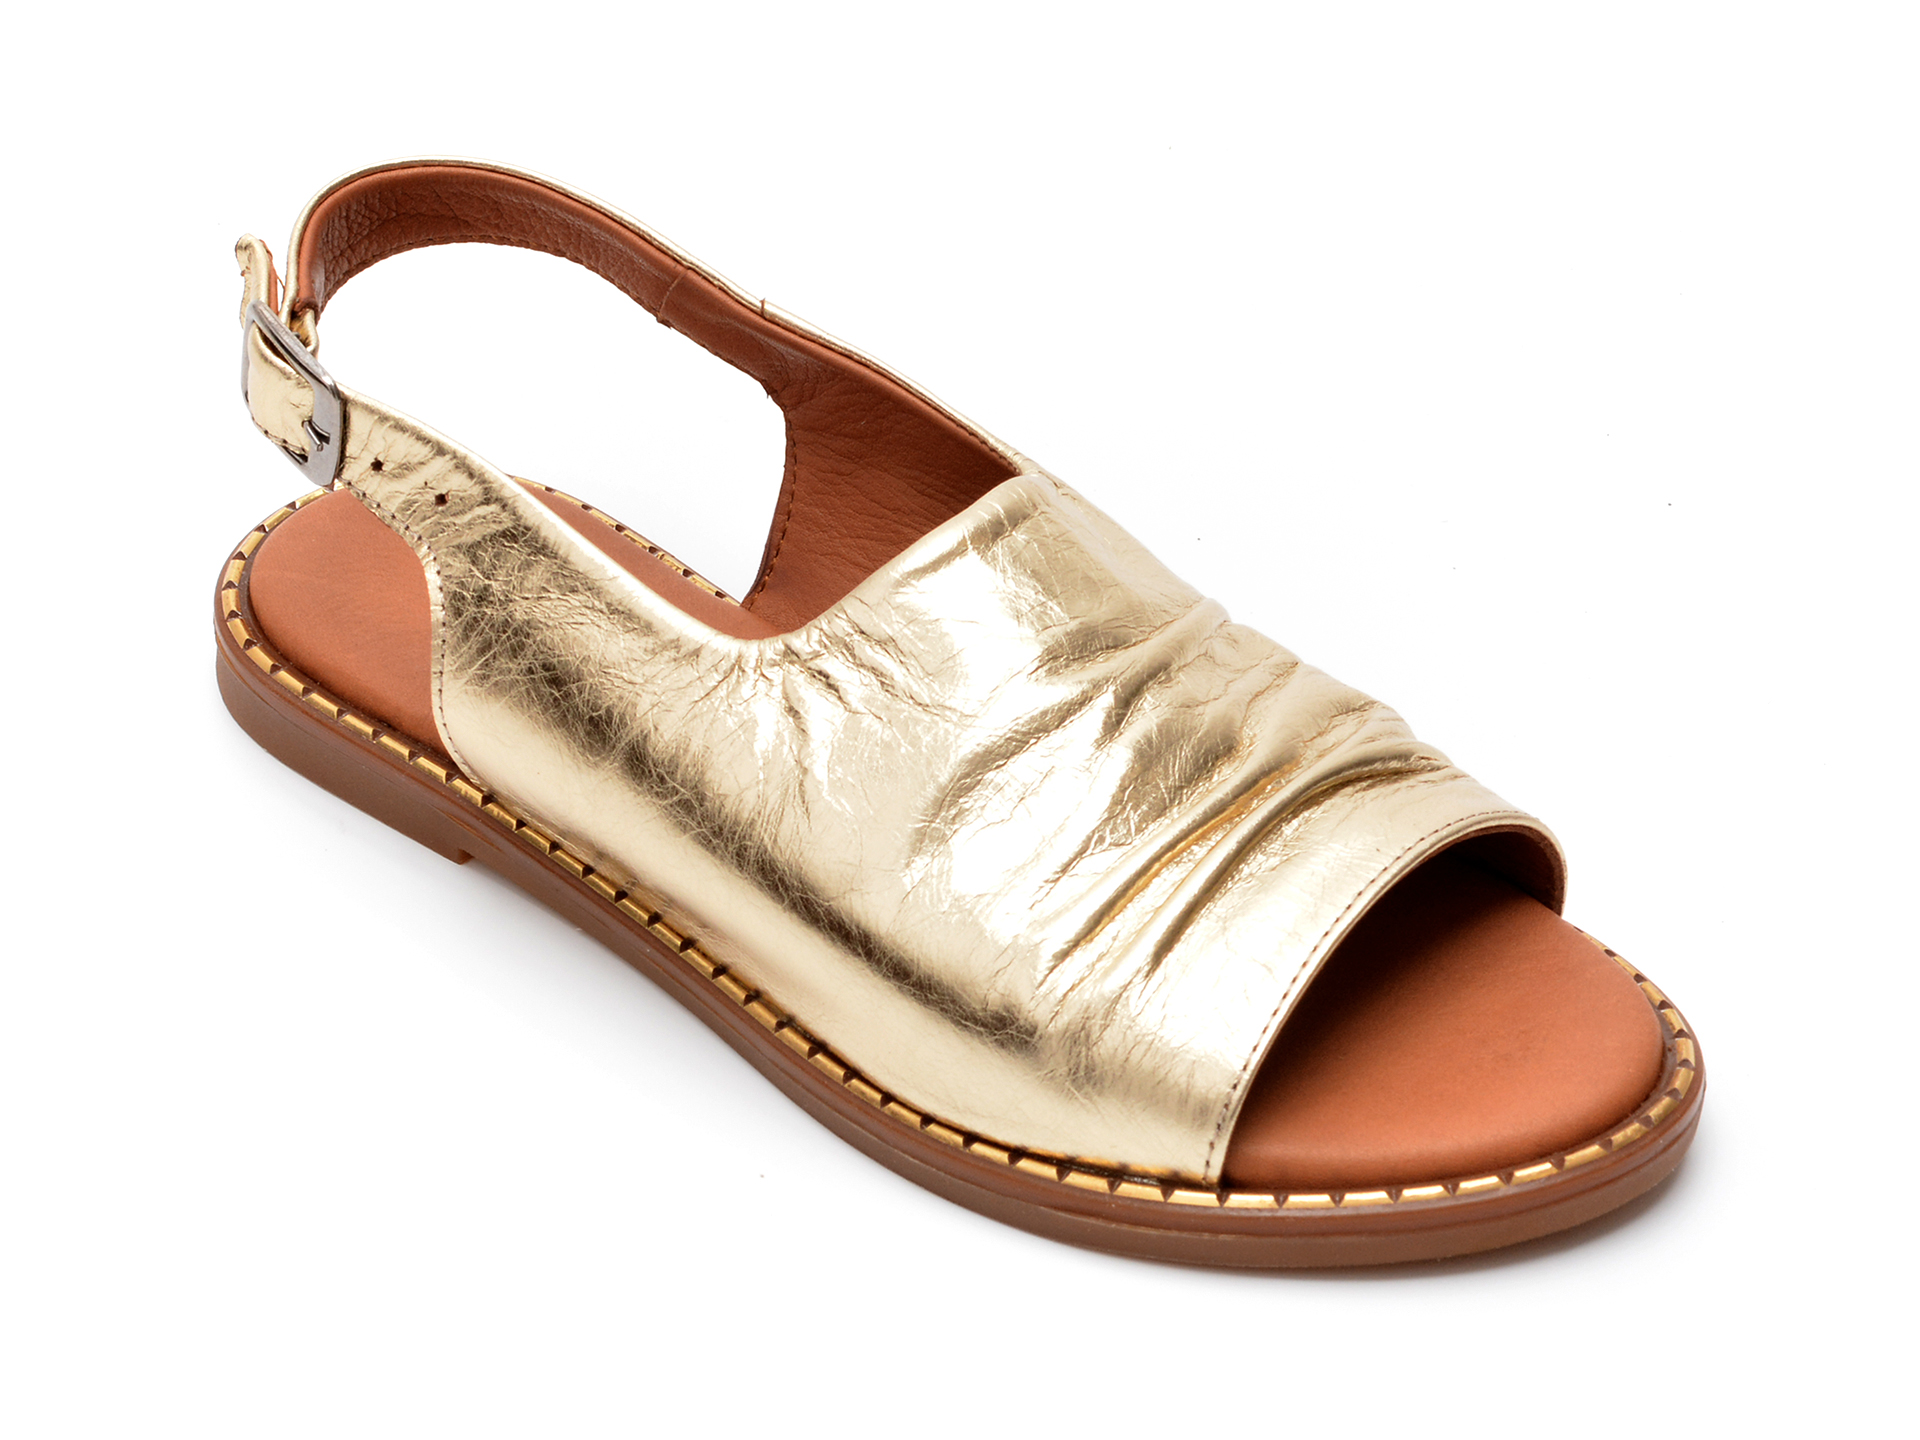 Sandale FLAVIA PASSINI aurii, 7079, din piele naturala